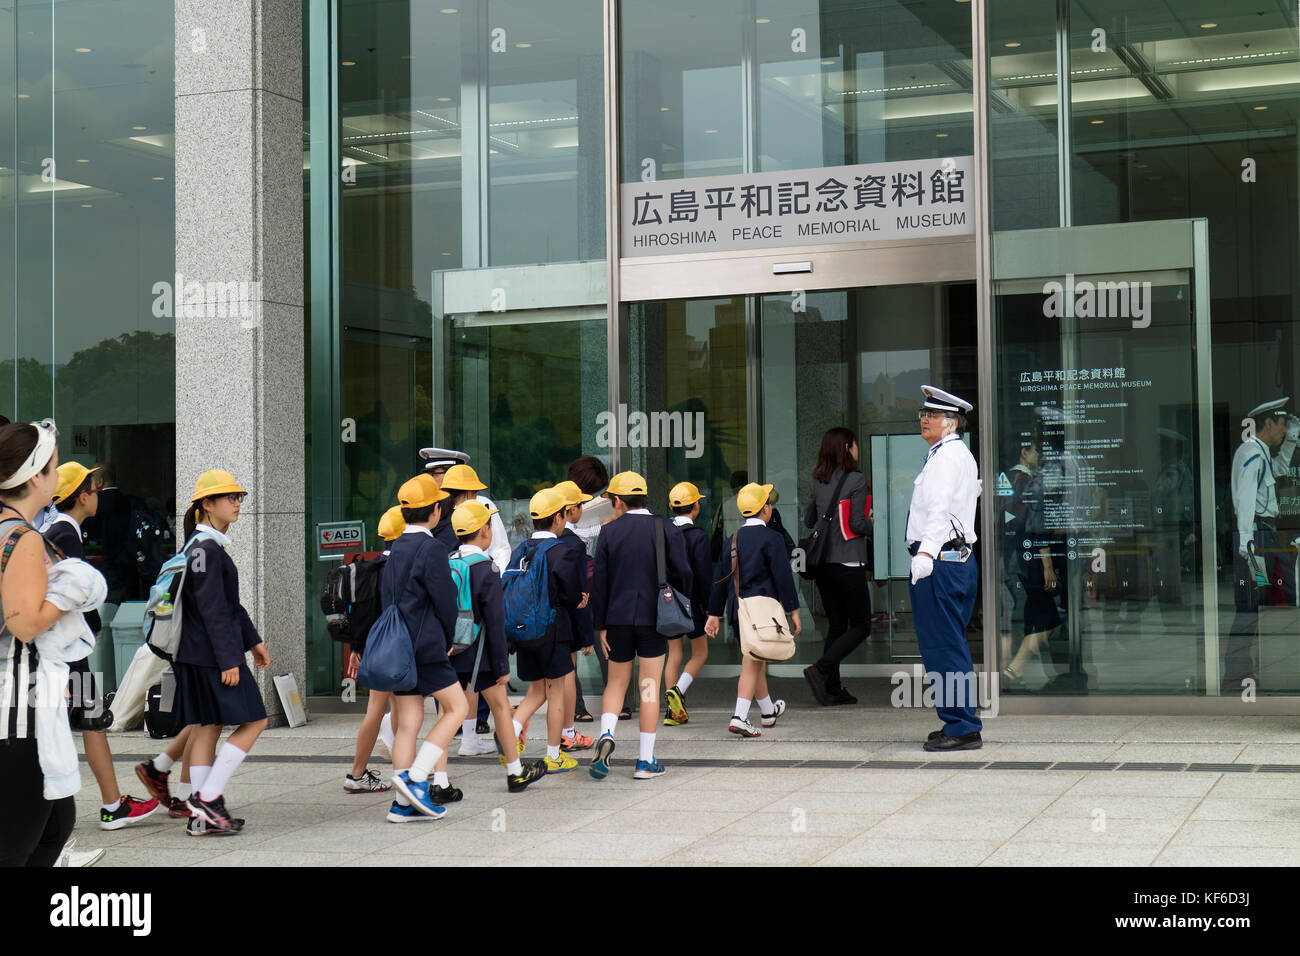 Hiroshima, Japon - 25 mai 2017:groupe d'élèves entrant dans l'hiroshima Peace Memorial Museum de Peace Memorial Park Banque D'Images